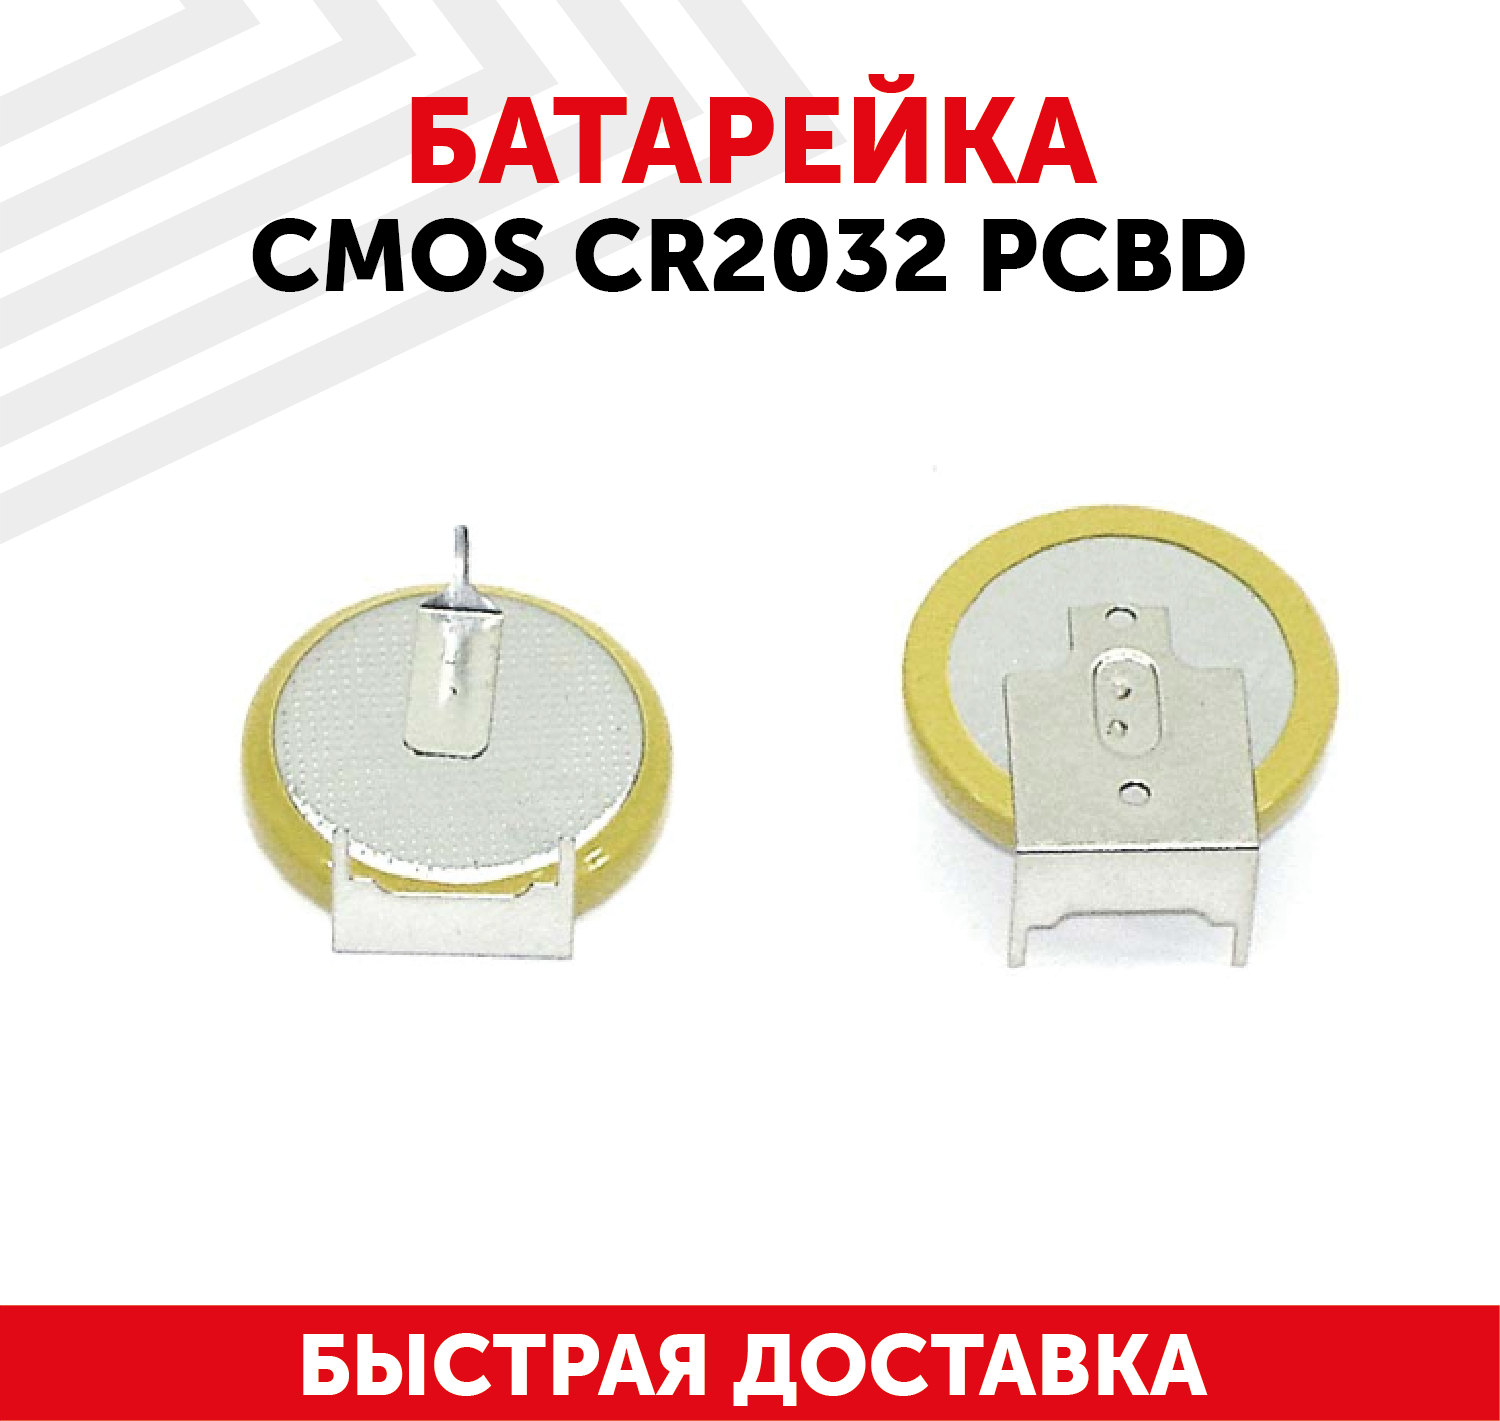 Батарейка (элемент питания, таблетка) CMOS CR2032 PCBD, 3В, 210мАч, для часов, игрушек, сигнализации, фонарей, брелоков